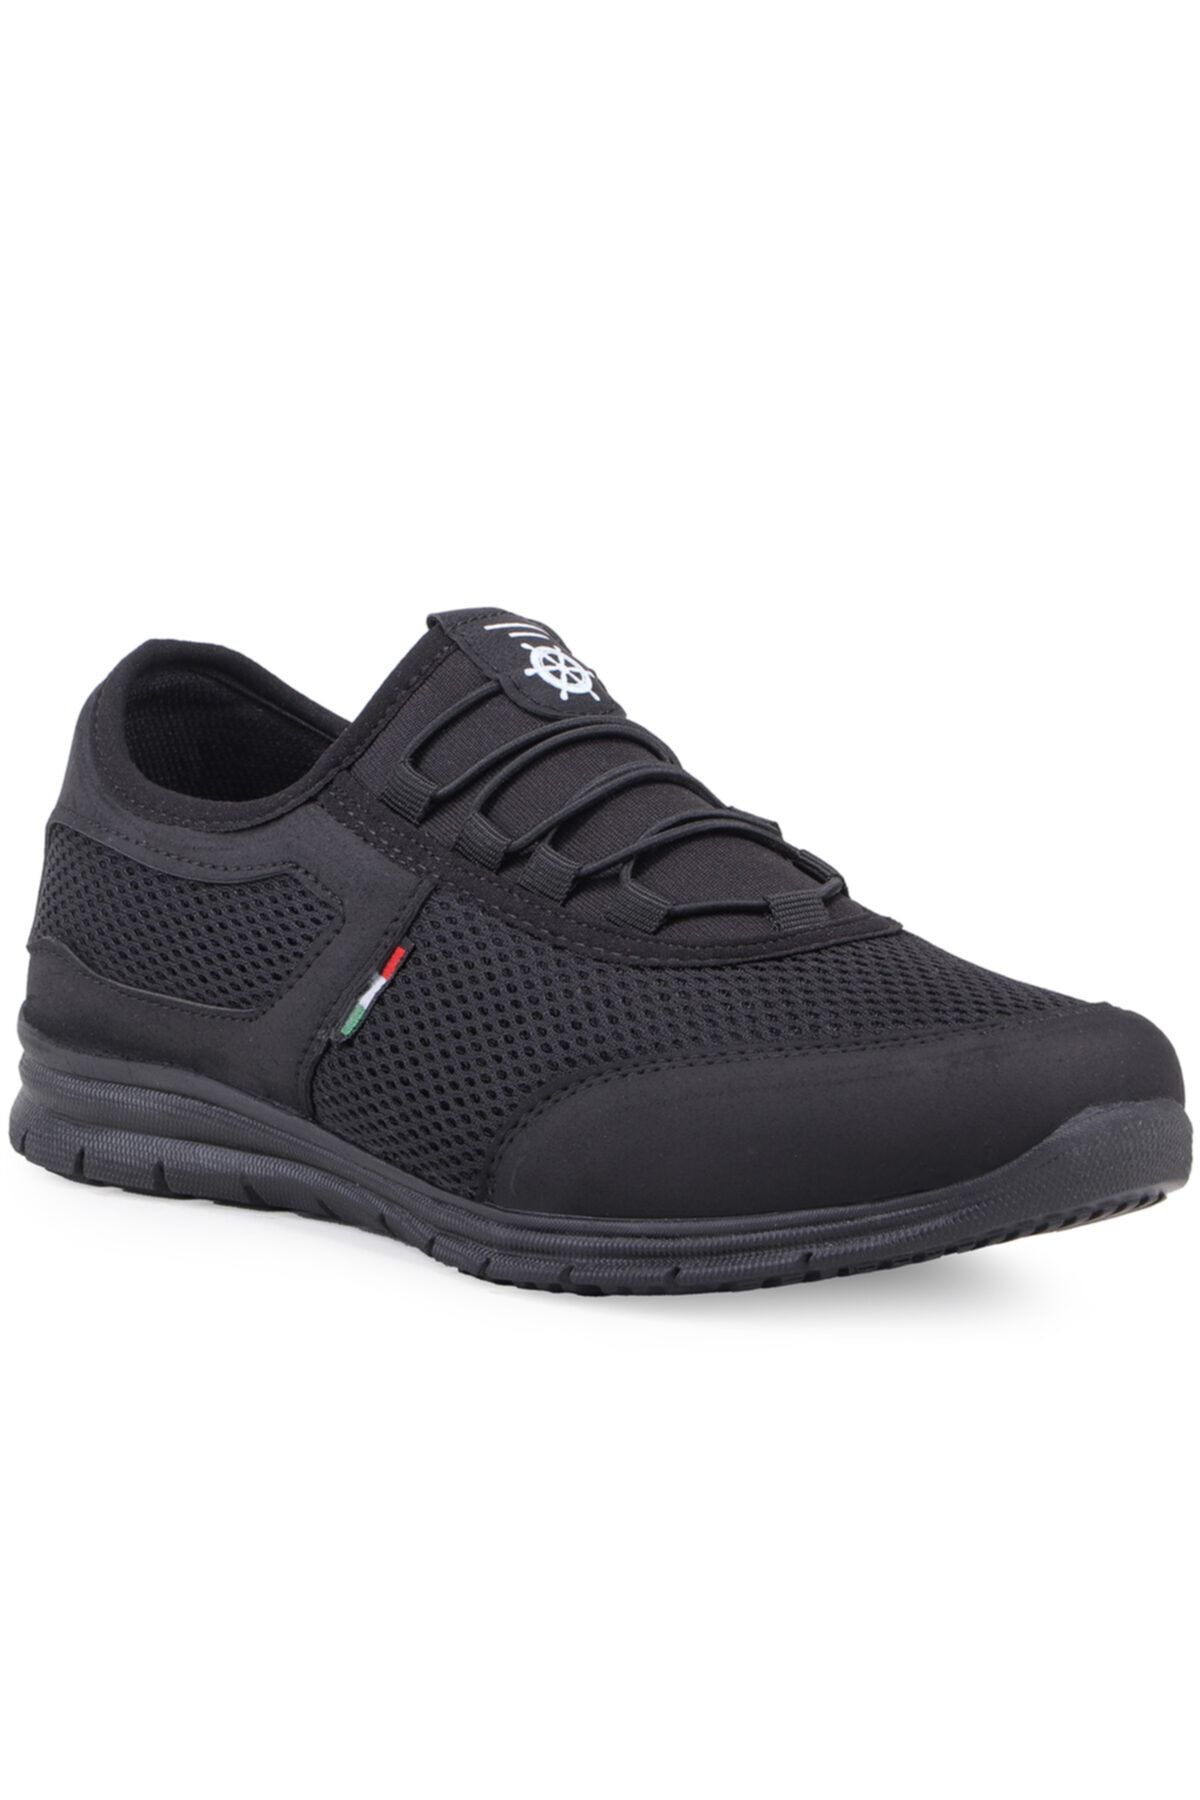 Vojo 4359 Bağcıksız Anorak Siyah Erkek Spor Ayakkabı Yürüyüş Ayakkabısı Comfort Rahat Taban